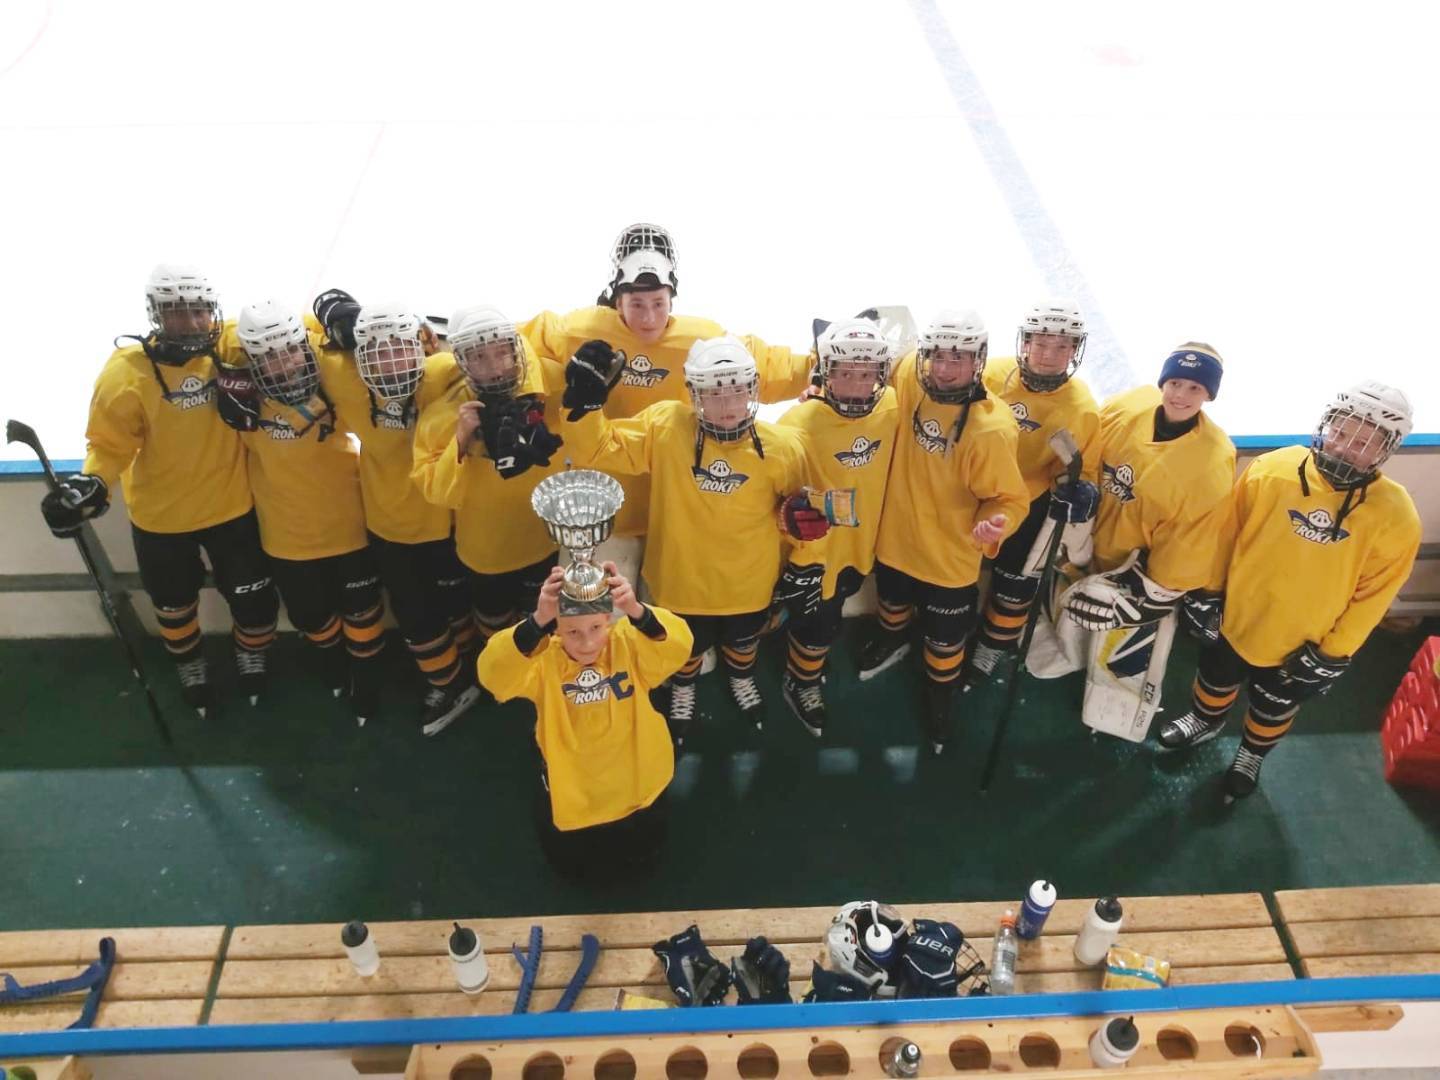 RoKi Sininen kävi hakemassa voiton kotiin Peltoniemi kalusteet Hockey Games -turnauksesta!